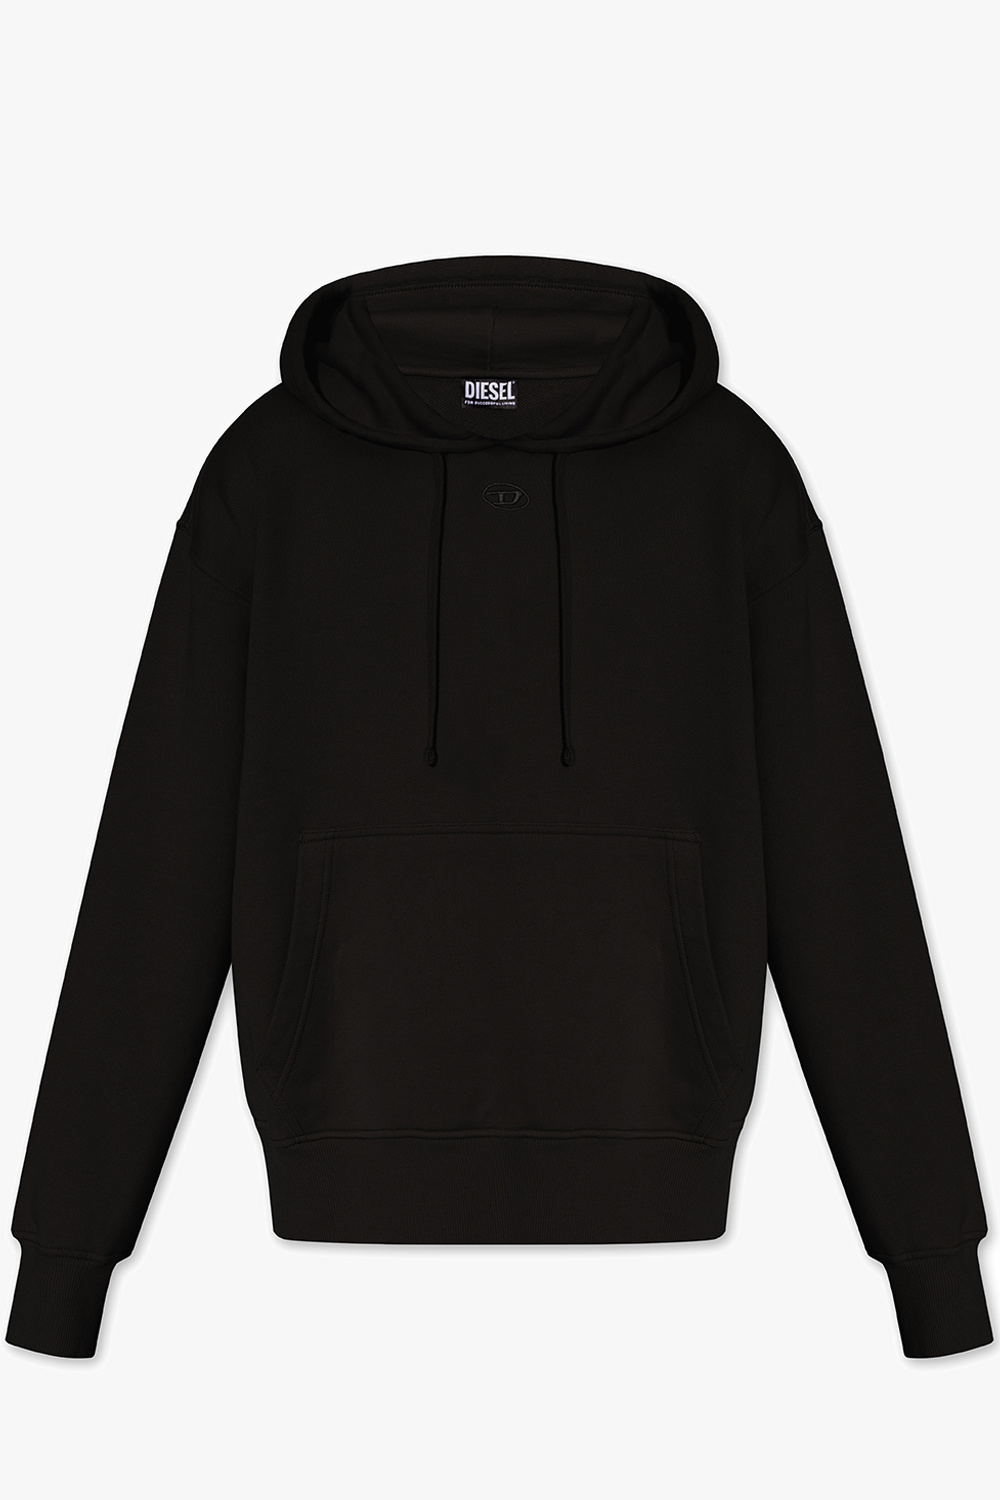 Diesel ‘S-MACS’ hoodie